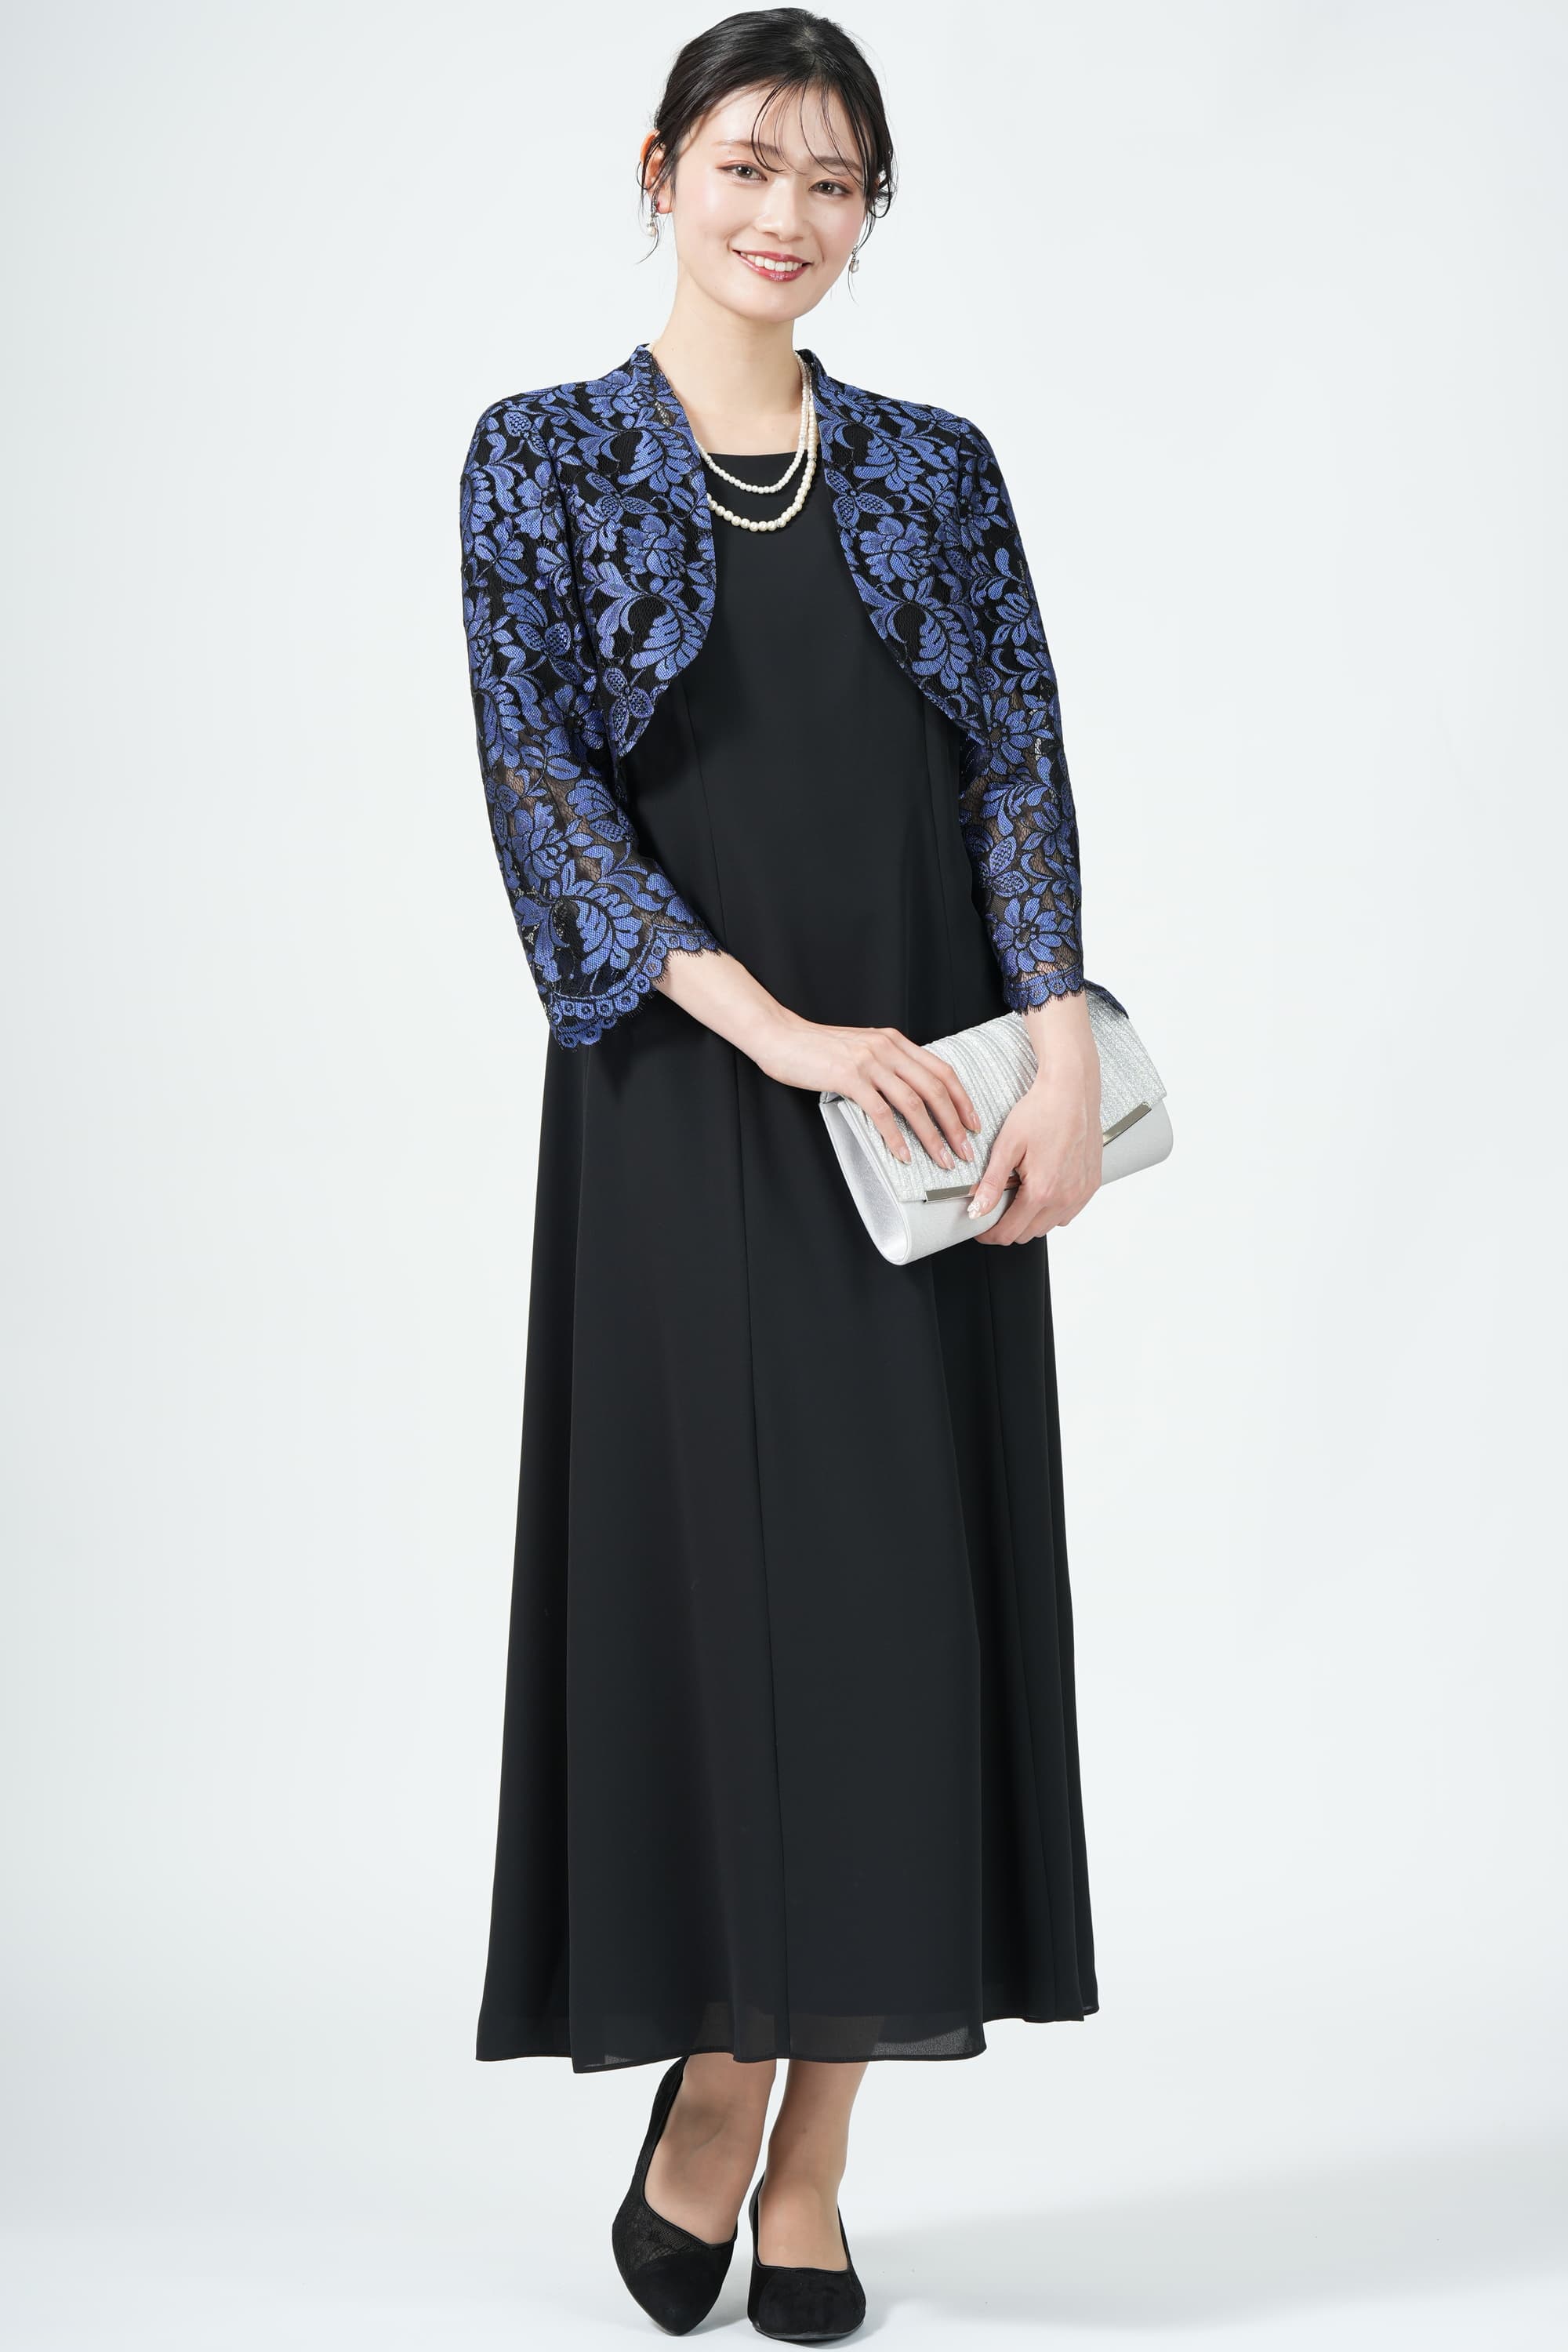 Apploberry 東京ソワール ラッセルフラワーブルー刺繍×ブラックドレスセット